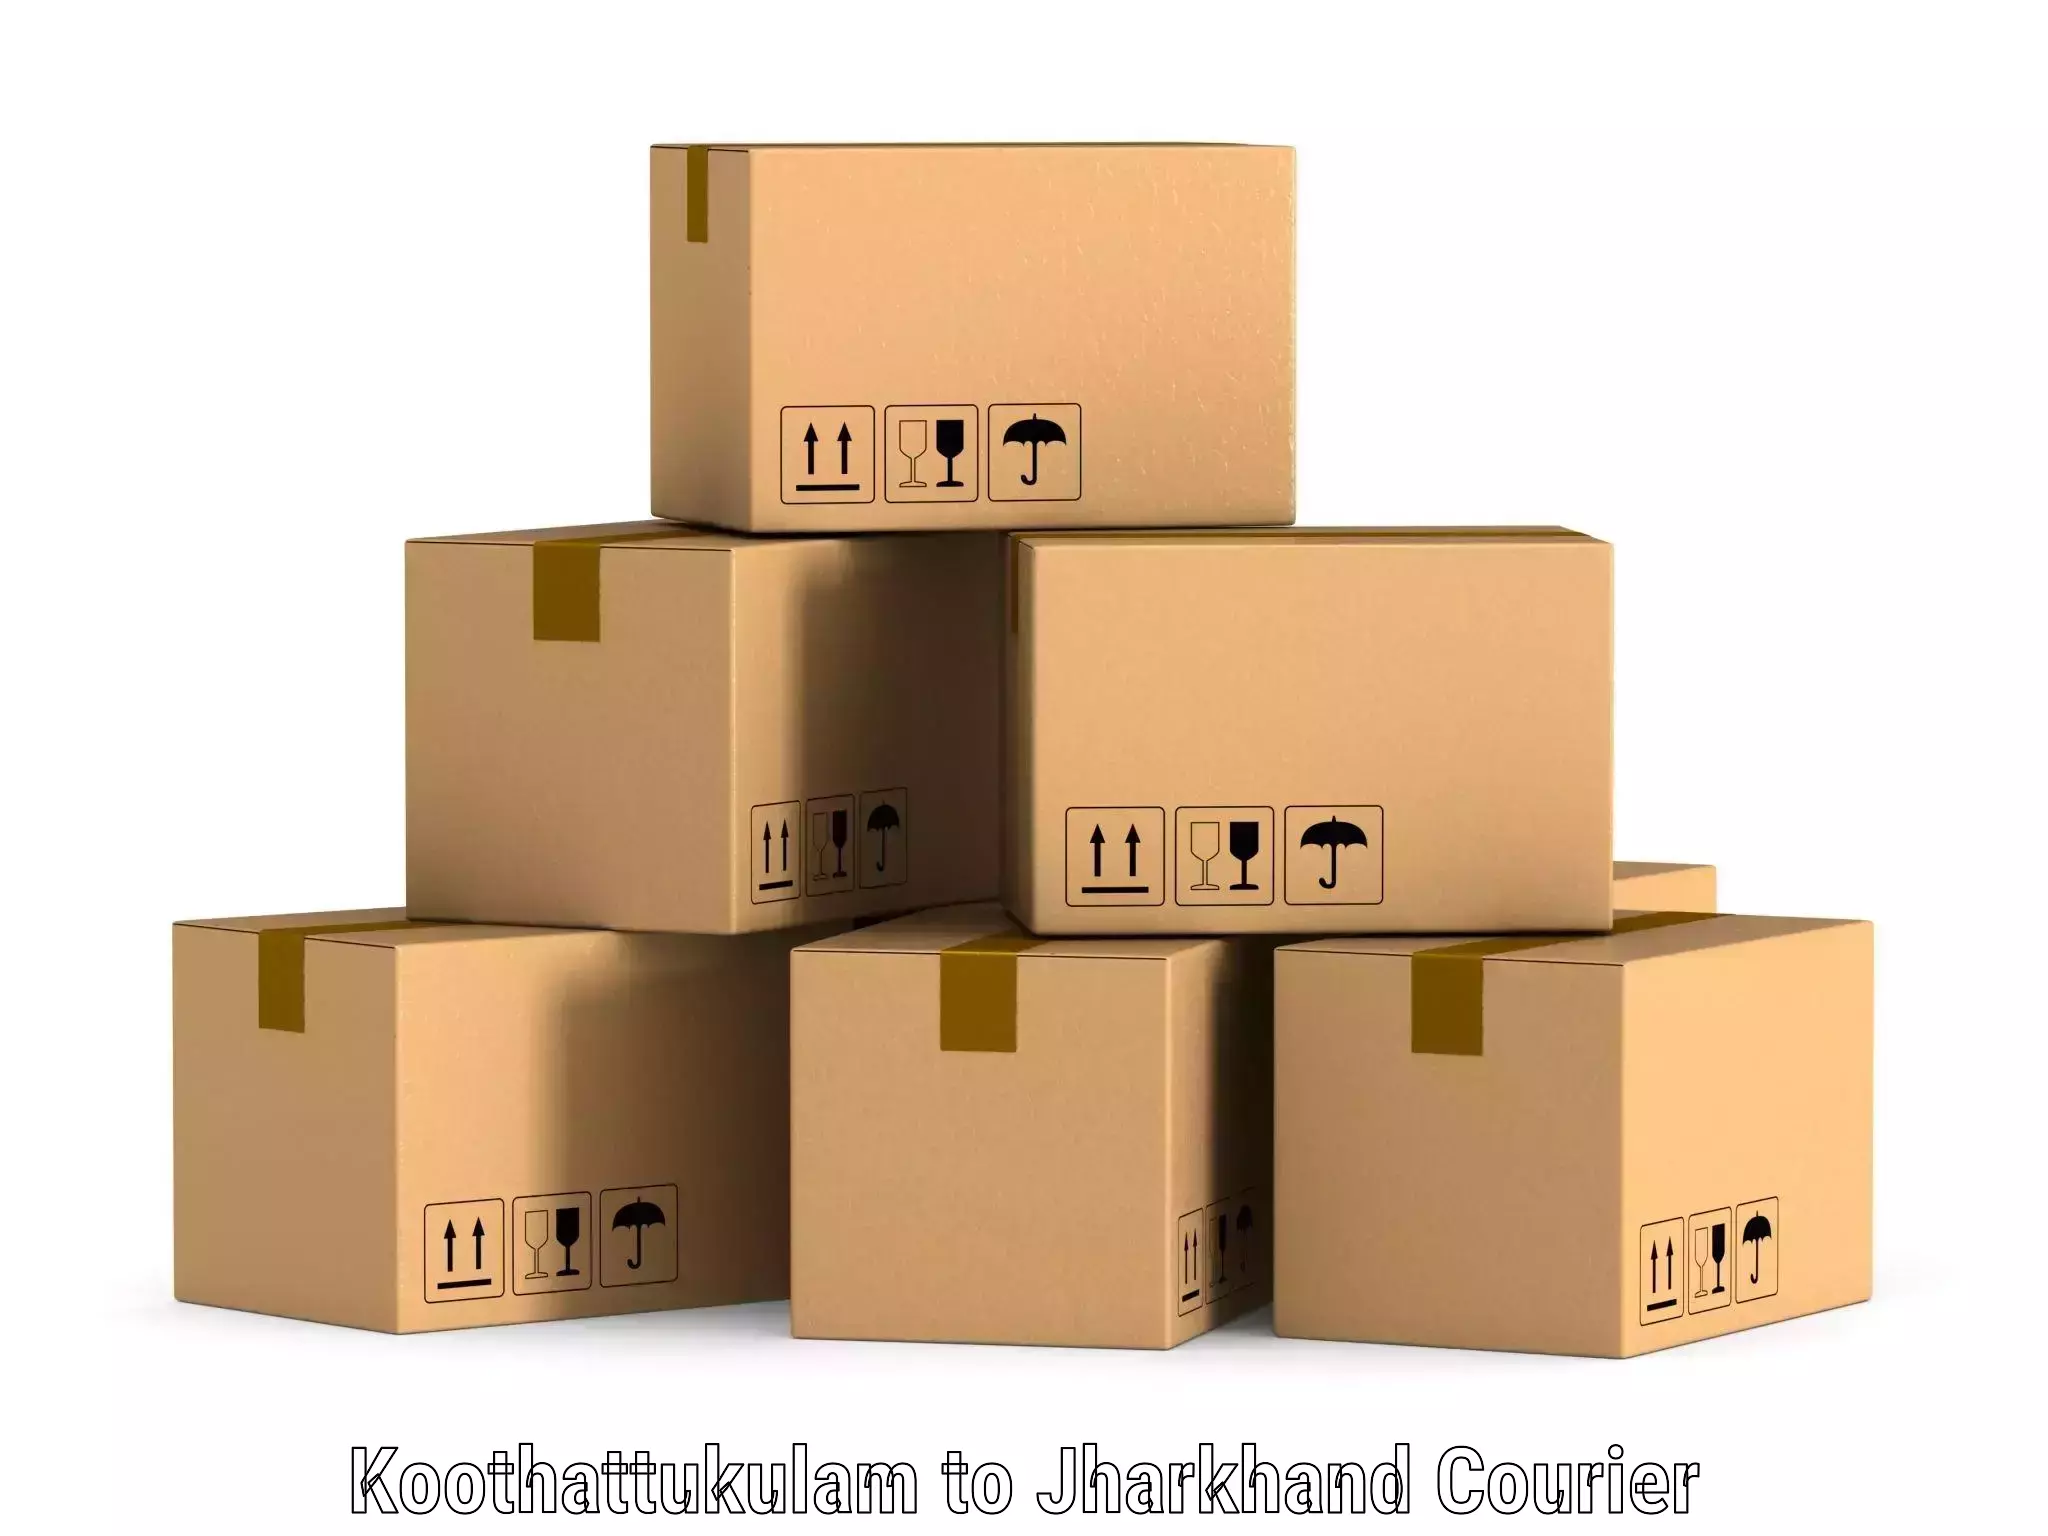 On-demand shipping options Koothattukulam to IIIT Ranchi